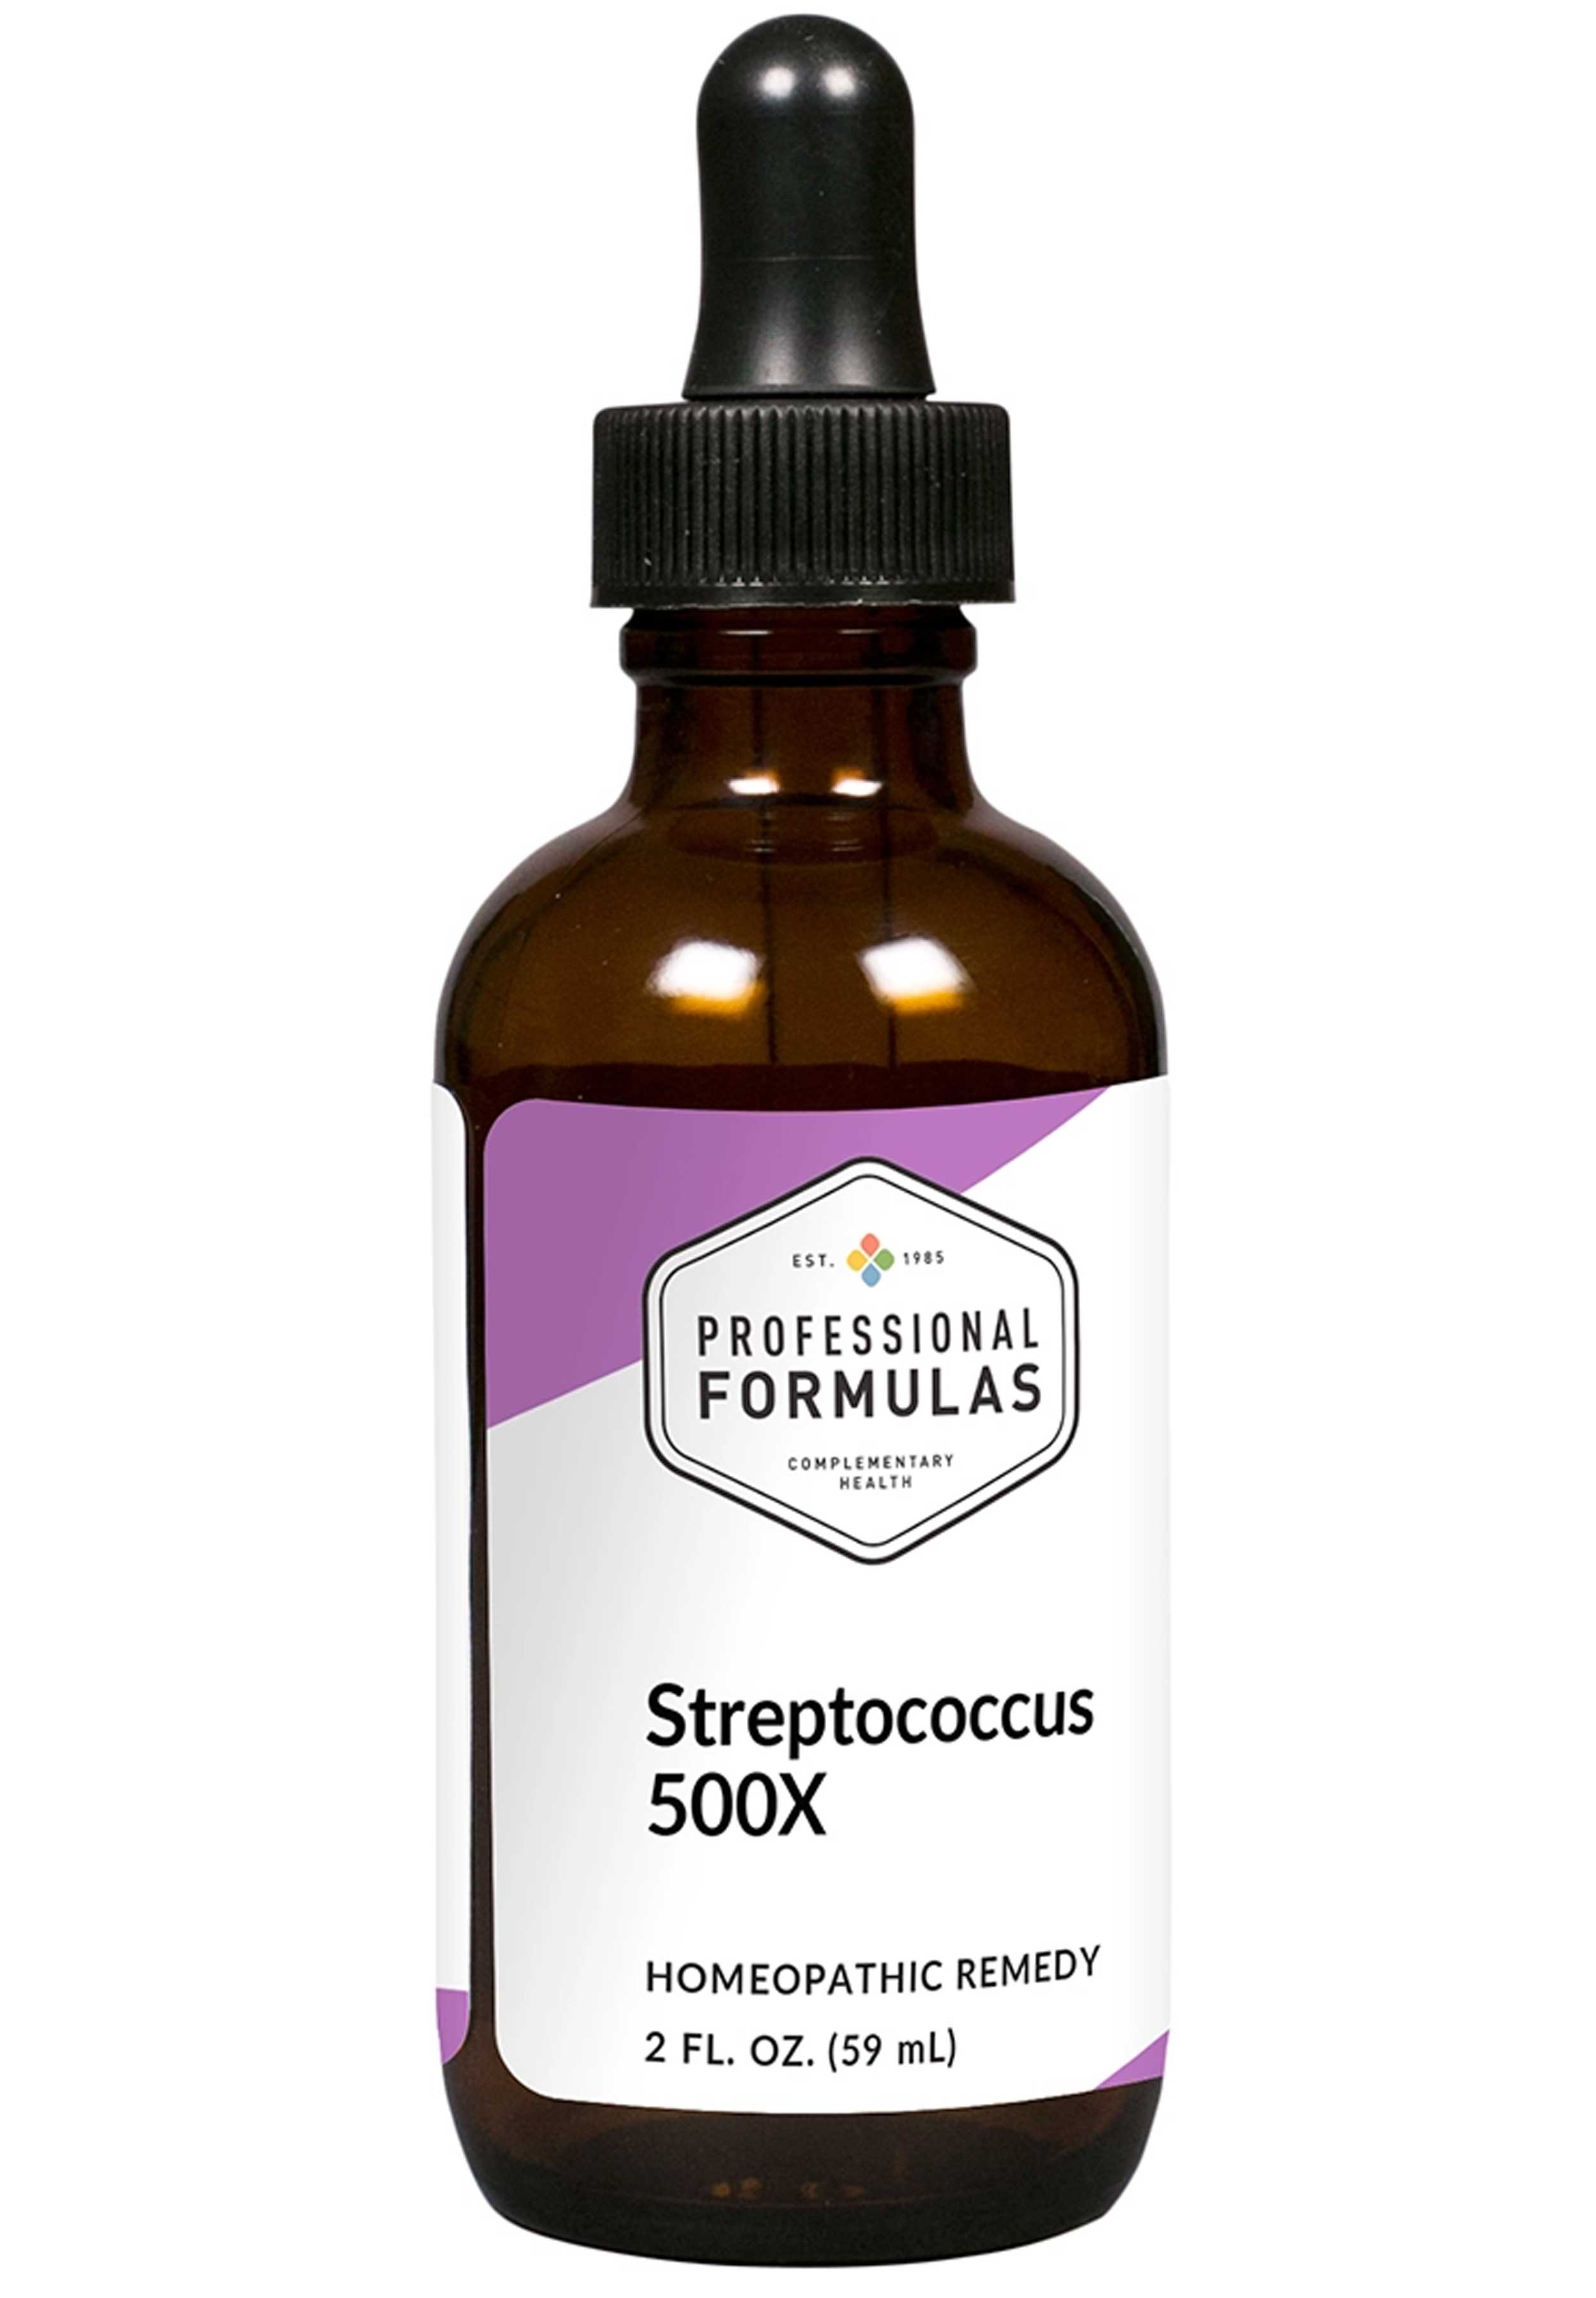 Professional Formulas Streptococcus 500X